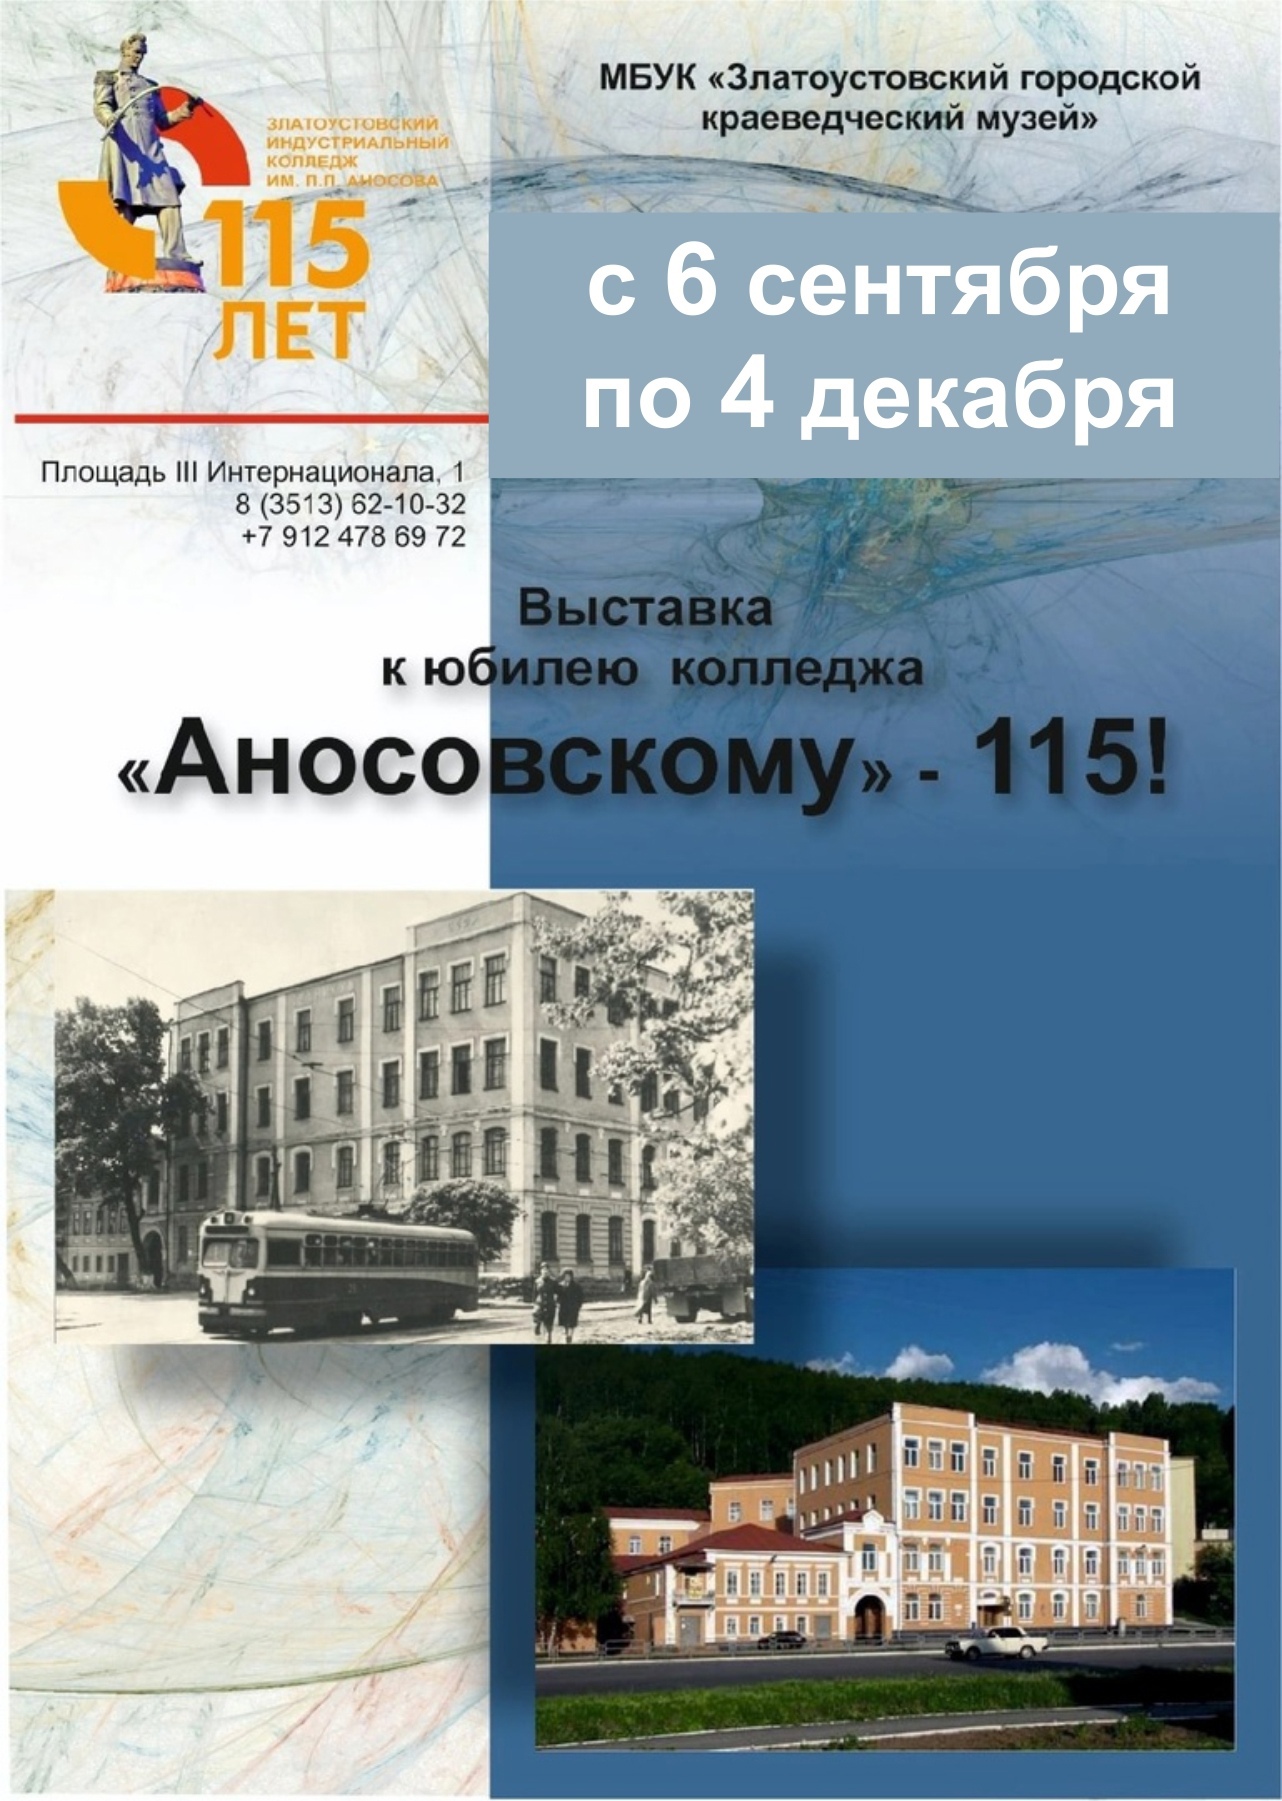 Выставка  к юбилею колледжа "Аносовскому" - 115